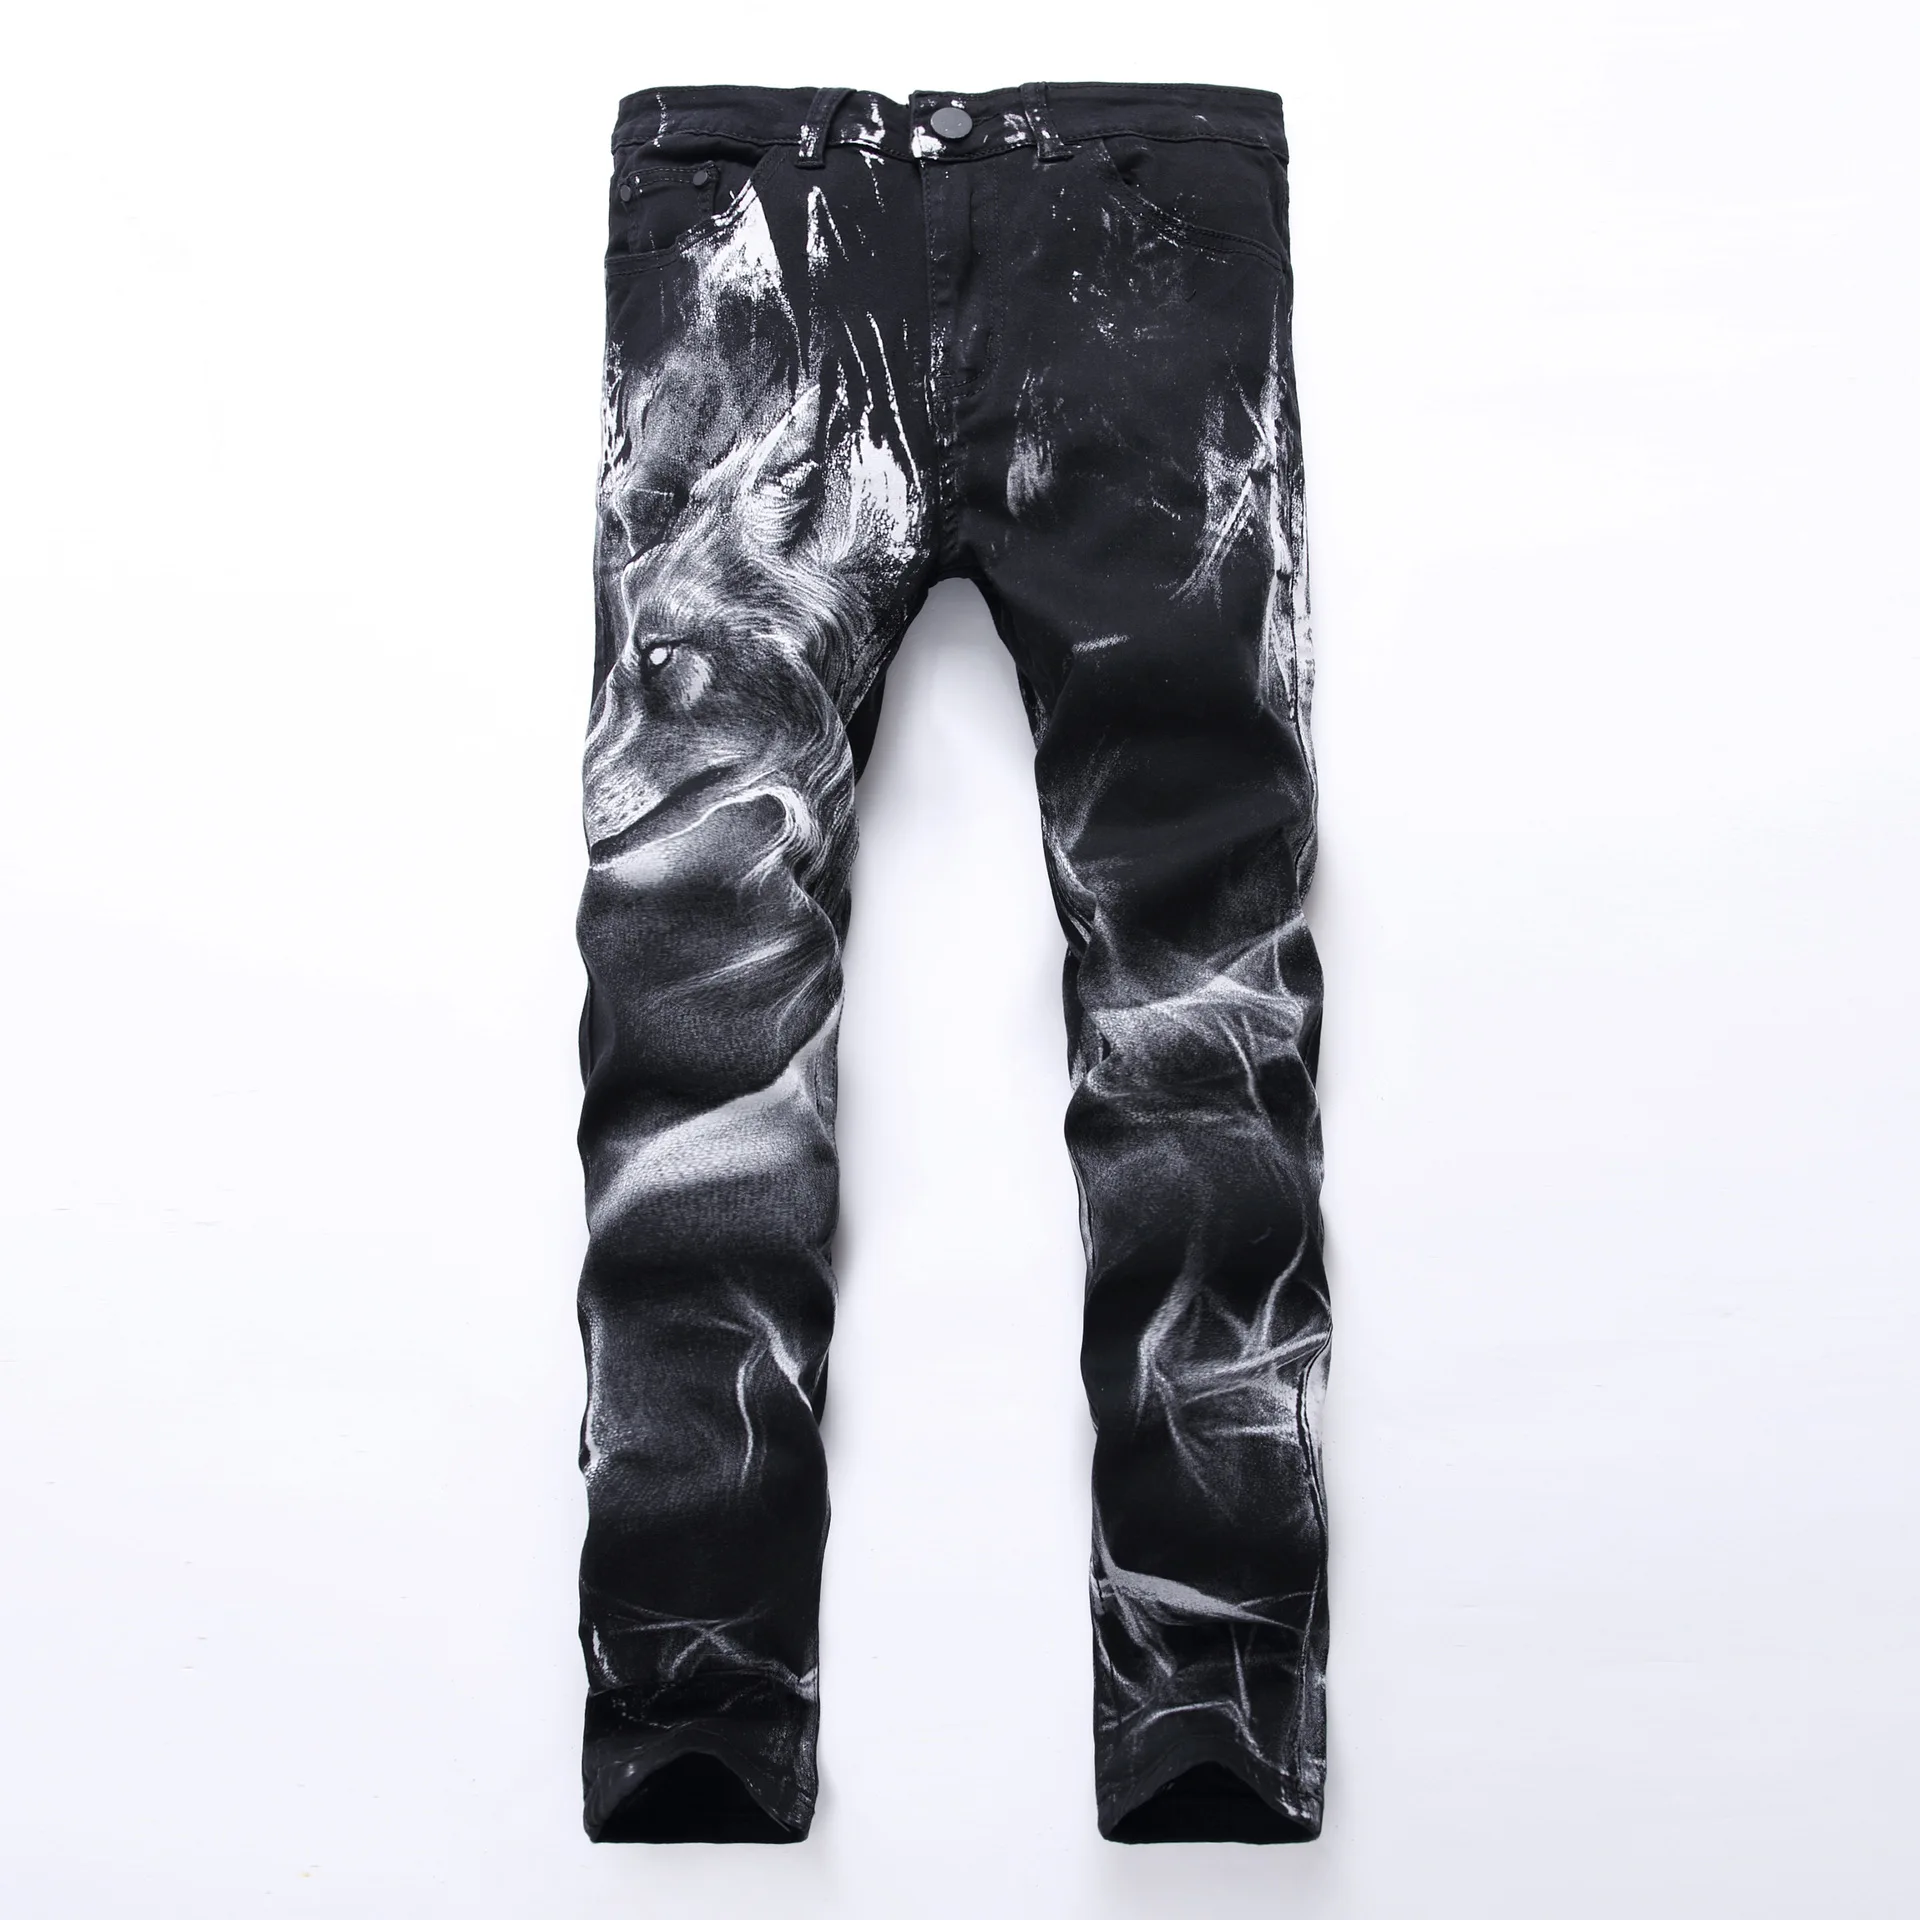 HMILY мужские джинсы байкерские обтягивающие рваные лакированные джинсы брюки с принтом льва рваная уличная одежда джинсовые брюки большие размеры 28-42